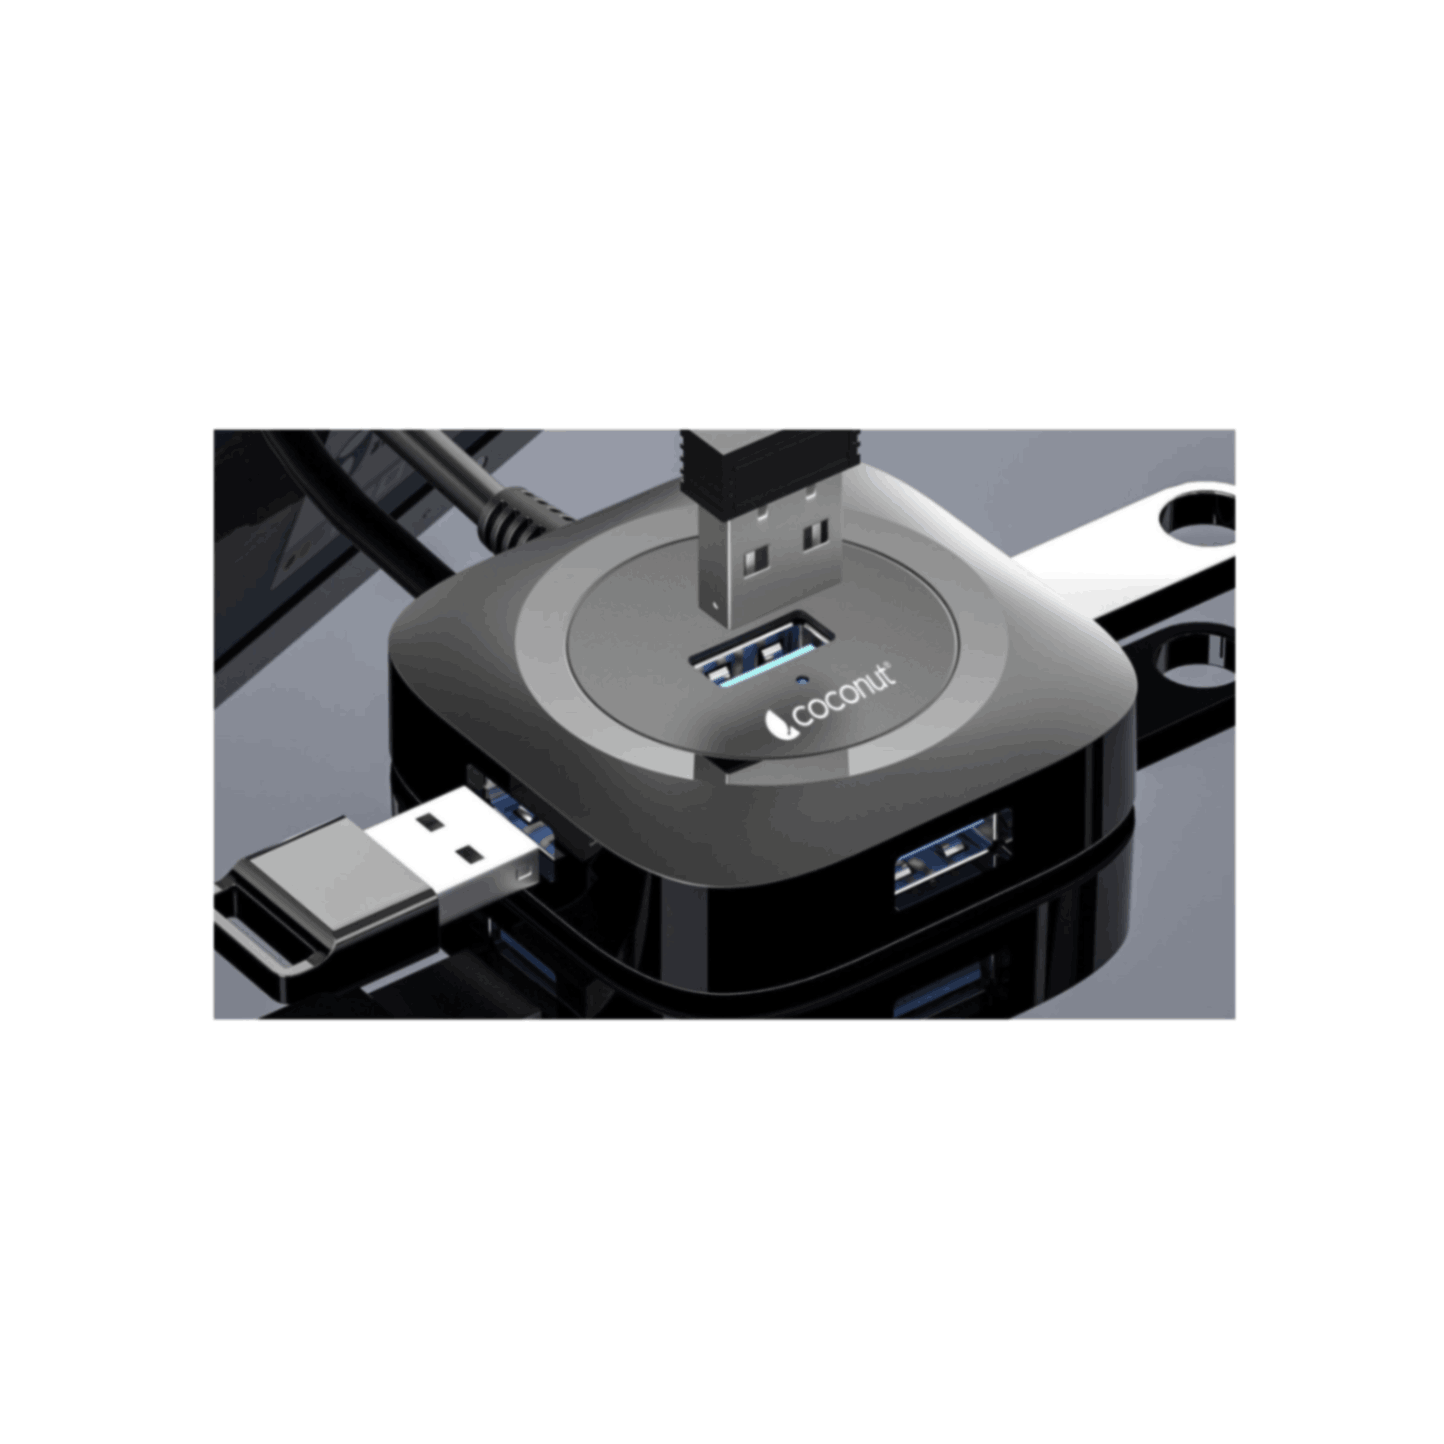 UH20 Vega 4 Port USB 3.0 Hub , 1M Cable